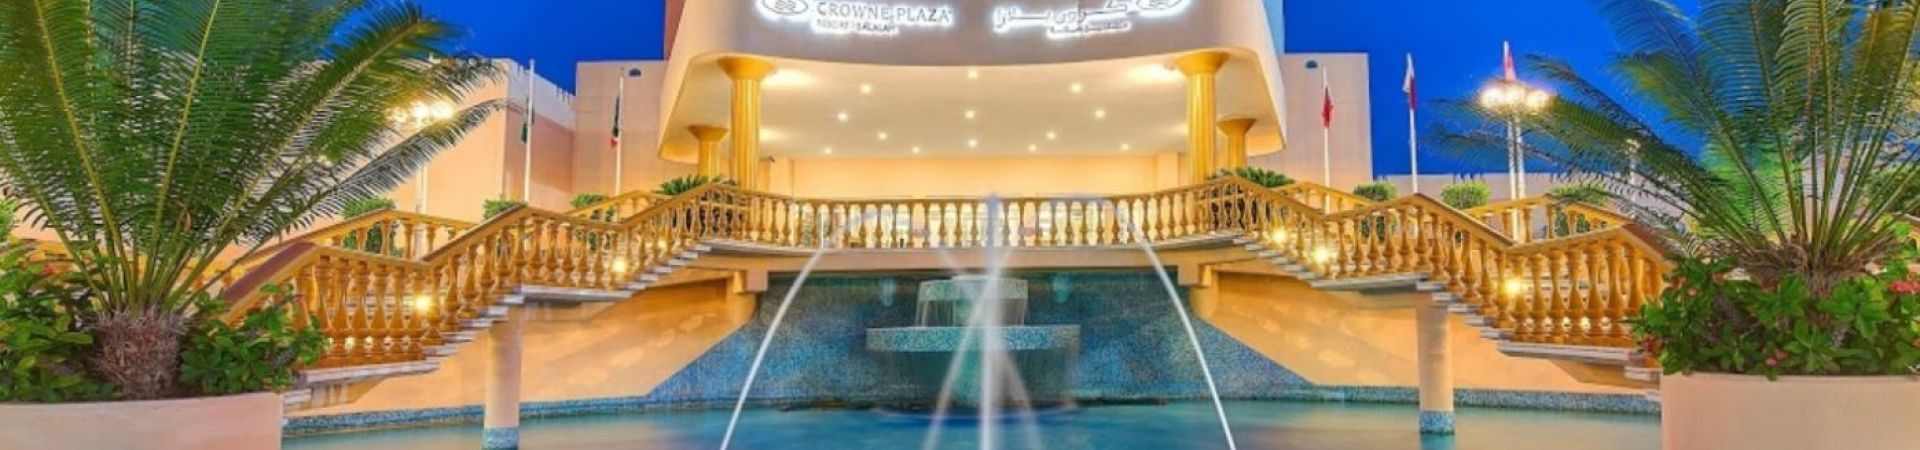 Crowne Plaza Resort Salalah Oman